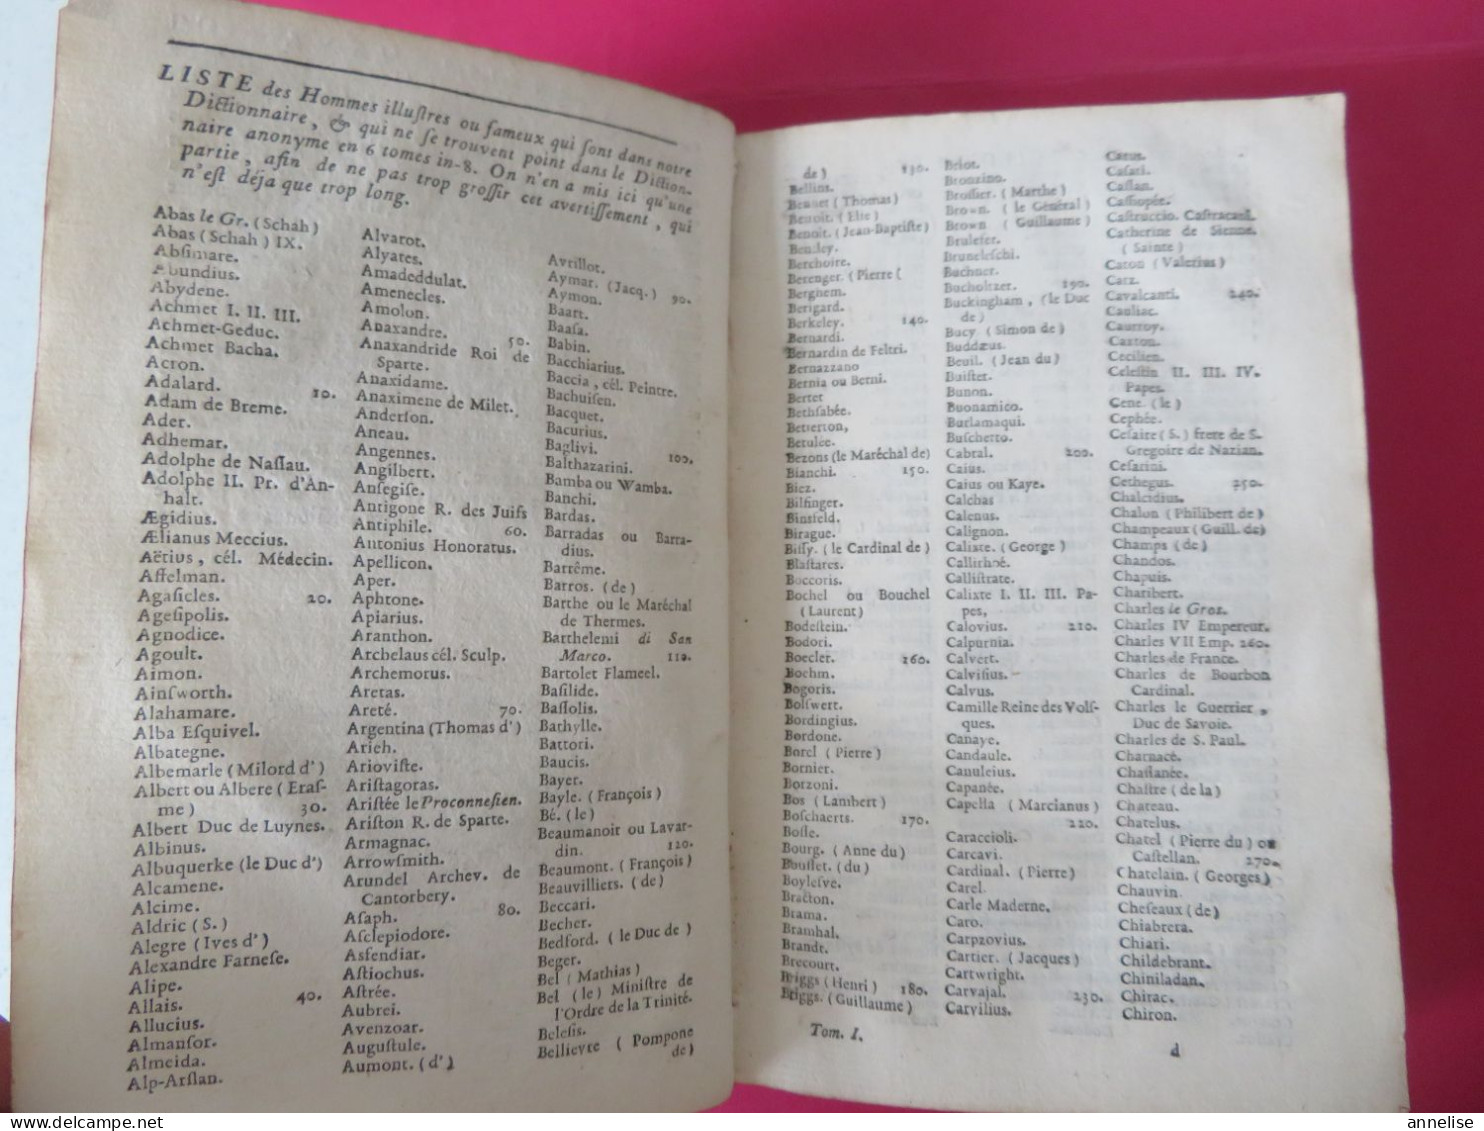 1760 Dictionnaire Historique Histoire des Patriarches, Princes hébreux, Empereurs, rois.. Abbé Ladvocat 2 Tomes